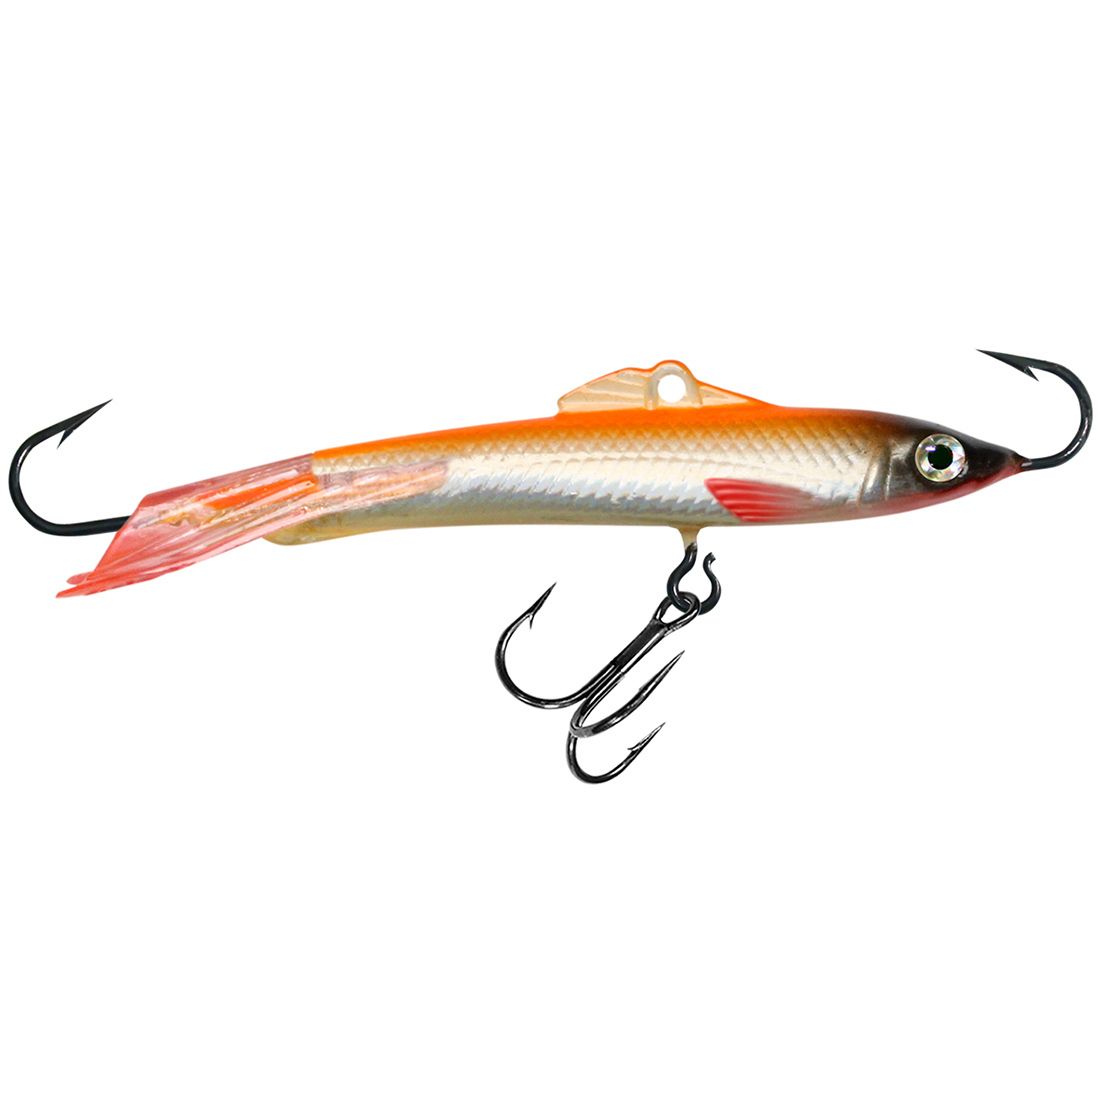 фото Балансир для рыбалки aqua шпрот-7 76mm цвет 102 оранжевая спинка, 1 штука